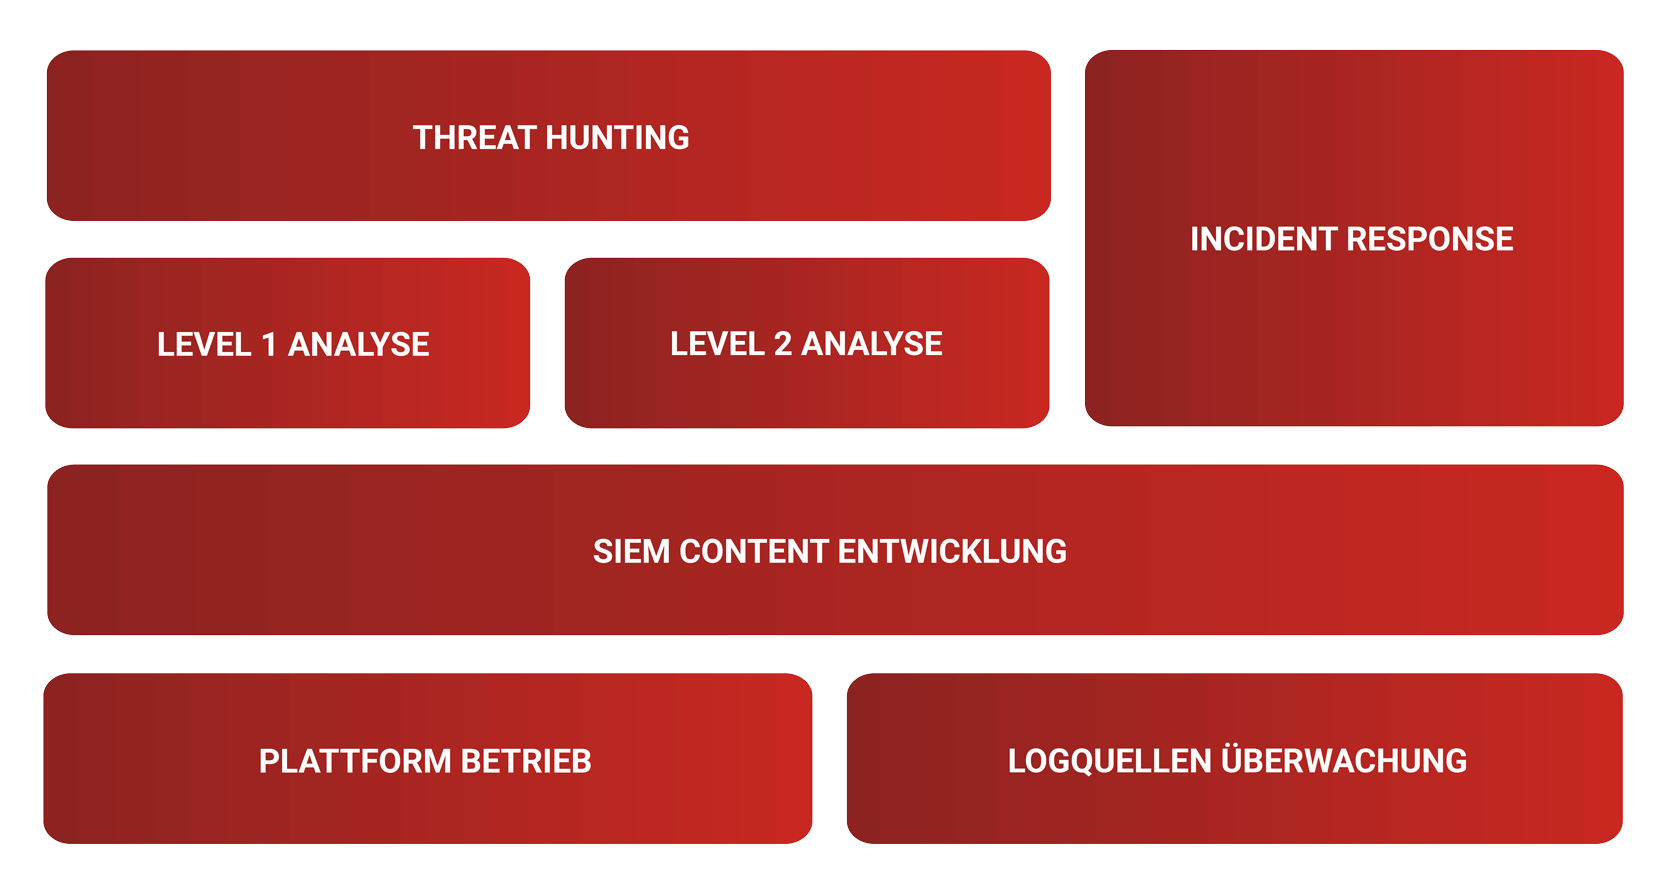 Eine Übersicht der verschiedenen Rollen im SIEM Betrieb. Threat Hunting & Incident Response, Level 1 & Level 2 Analyse, SIEM Content Entwicklung und Platform Betrieb sowie Logquellen Überwachung. Alle Bereiche sind rot dargestellt, die Farbe der Menüführung für Co-Managed SIEM.